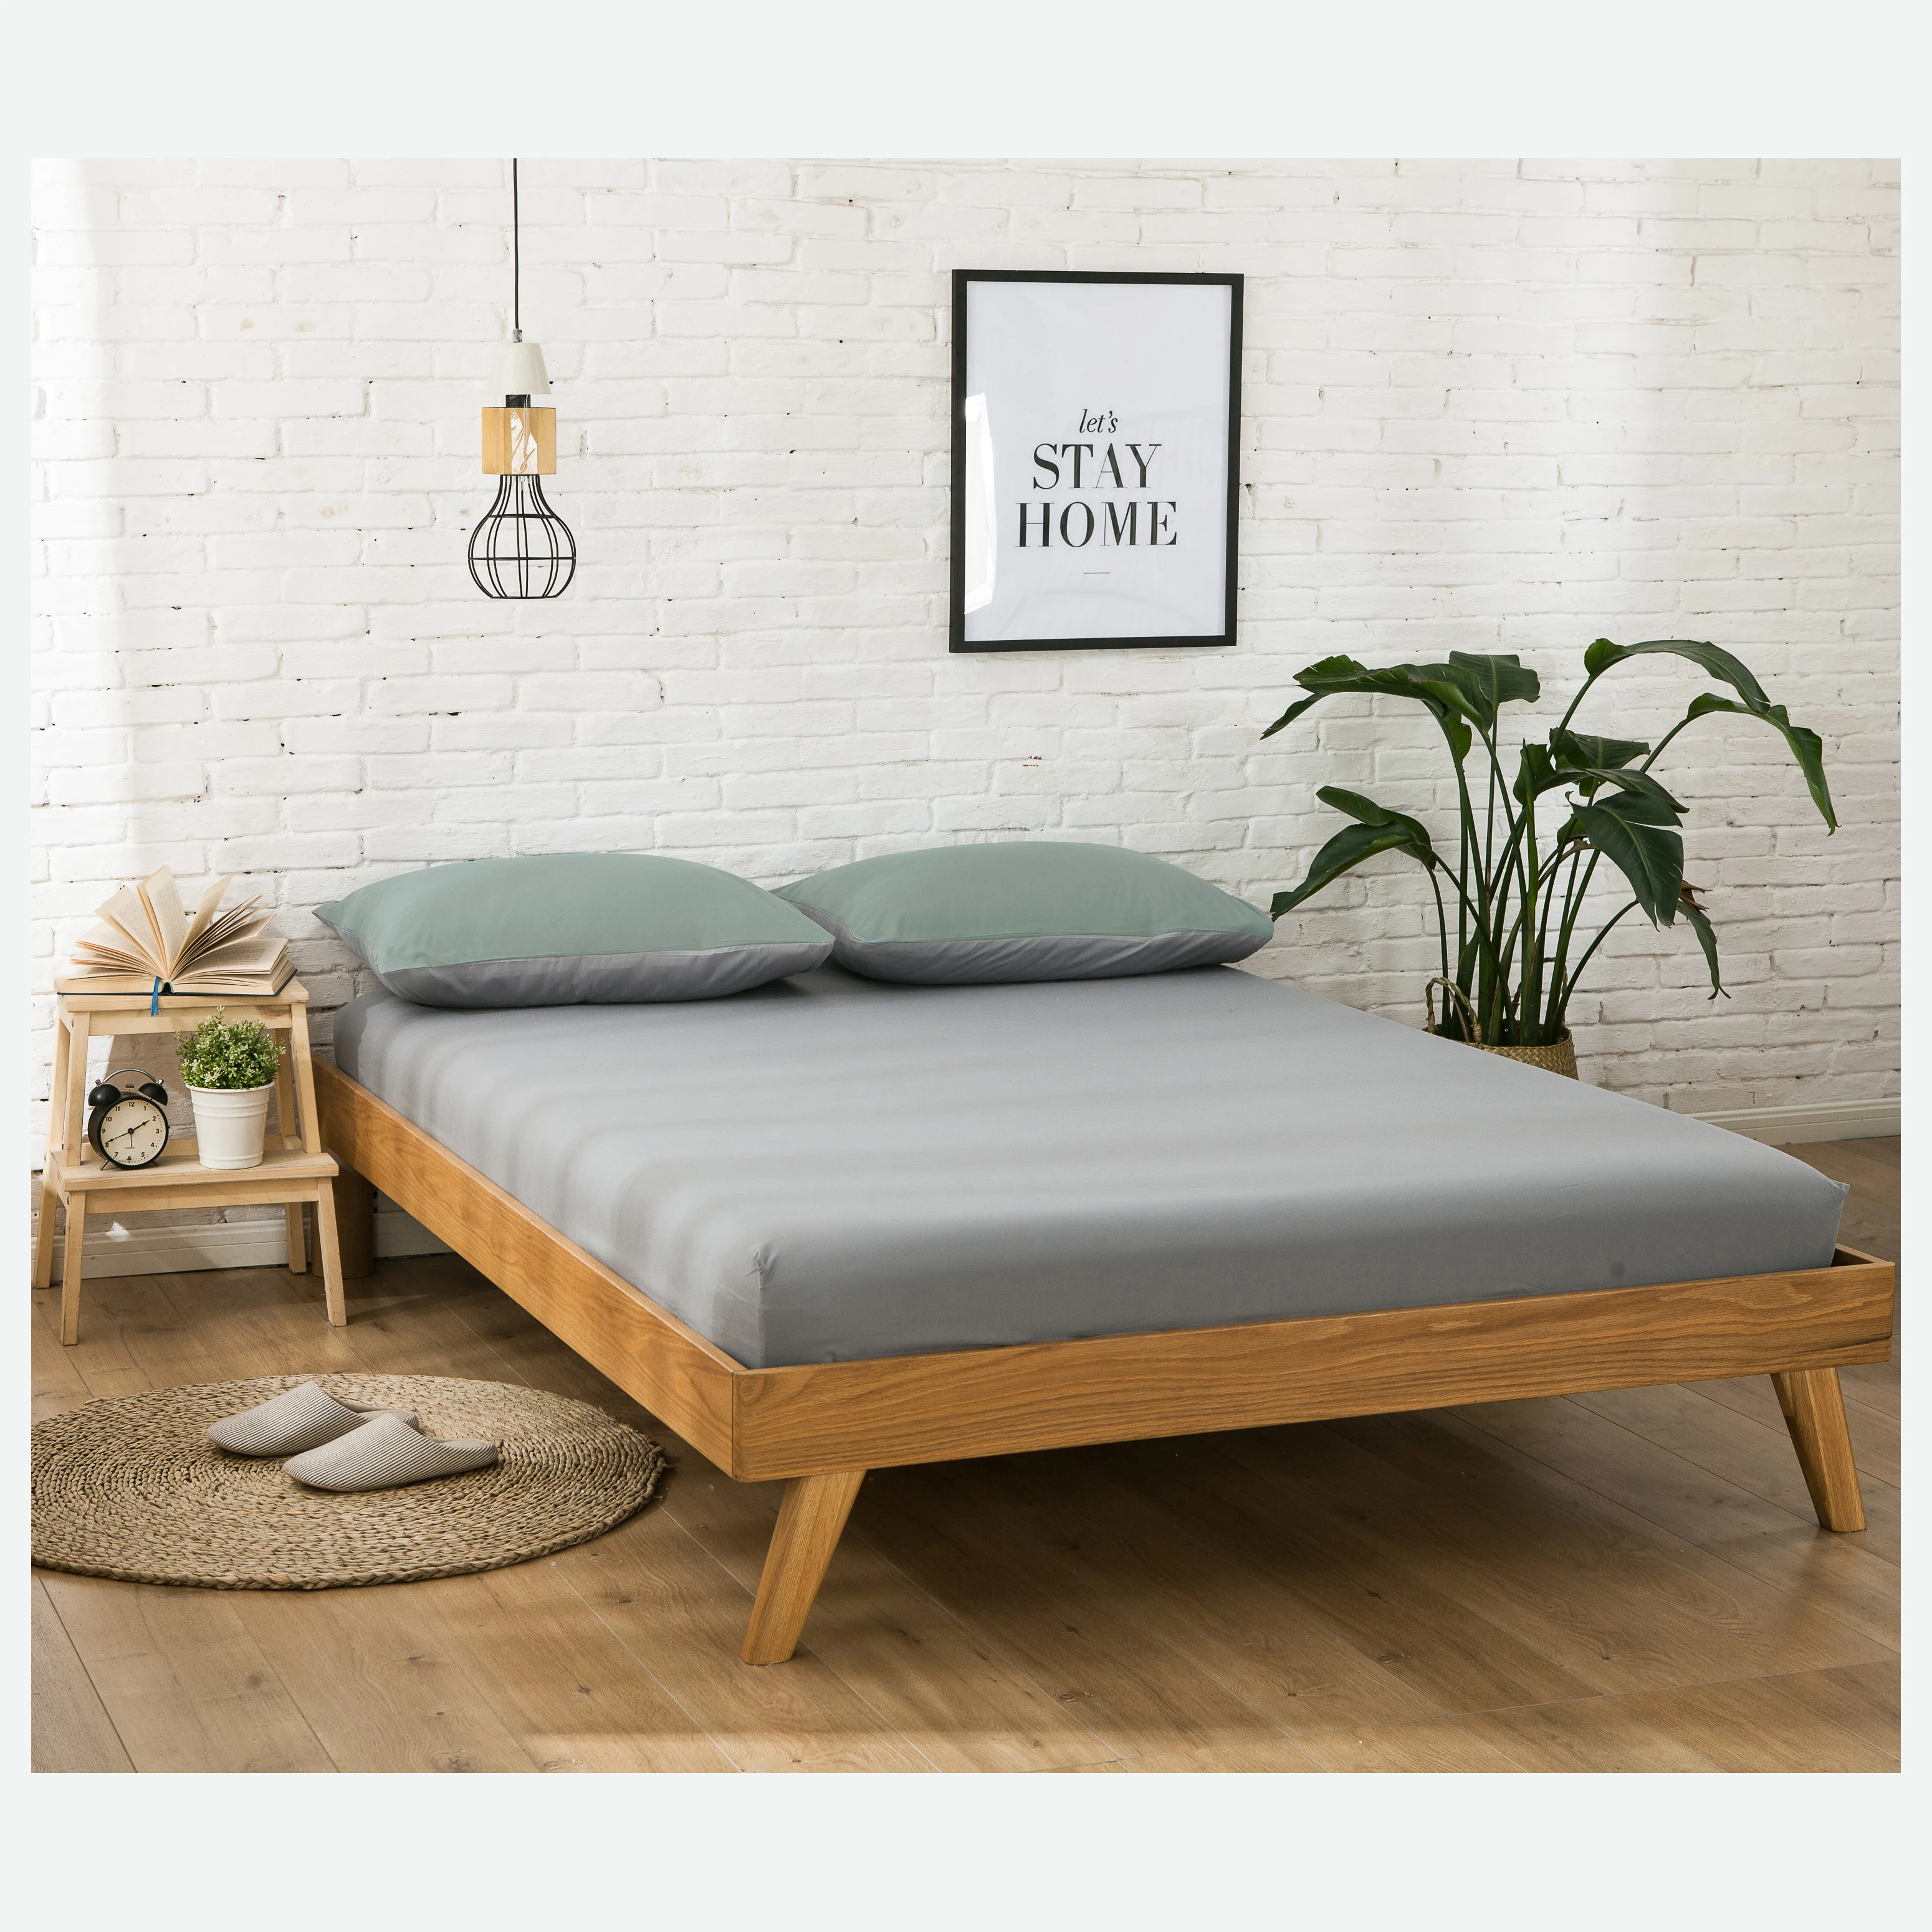 King Size Sheet Set - solid color 1800TC Wrinkle Free Microfiber Bed Sheets /Bed line /bedding set